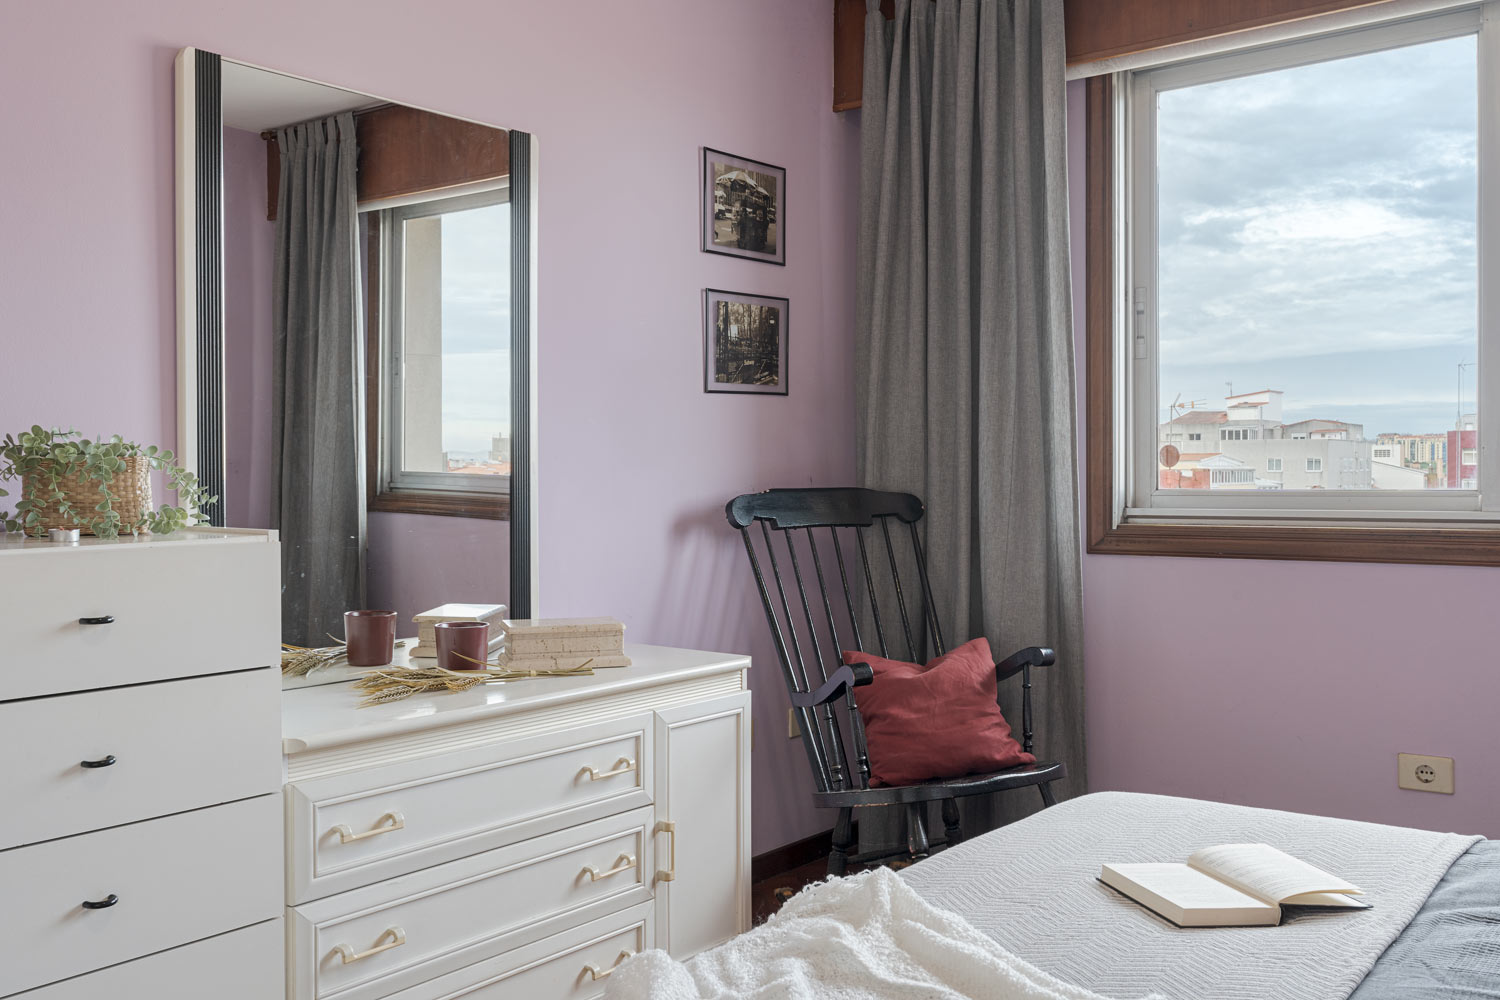 Acogedor rincón de un dormitorio con decoración en tonos lavanda y gris, que incluye un espejo grande, una cómoda blanca, una mecedora negra con cojín rojo y una ventana que ofrece vistas urbanas